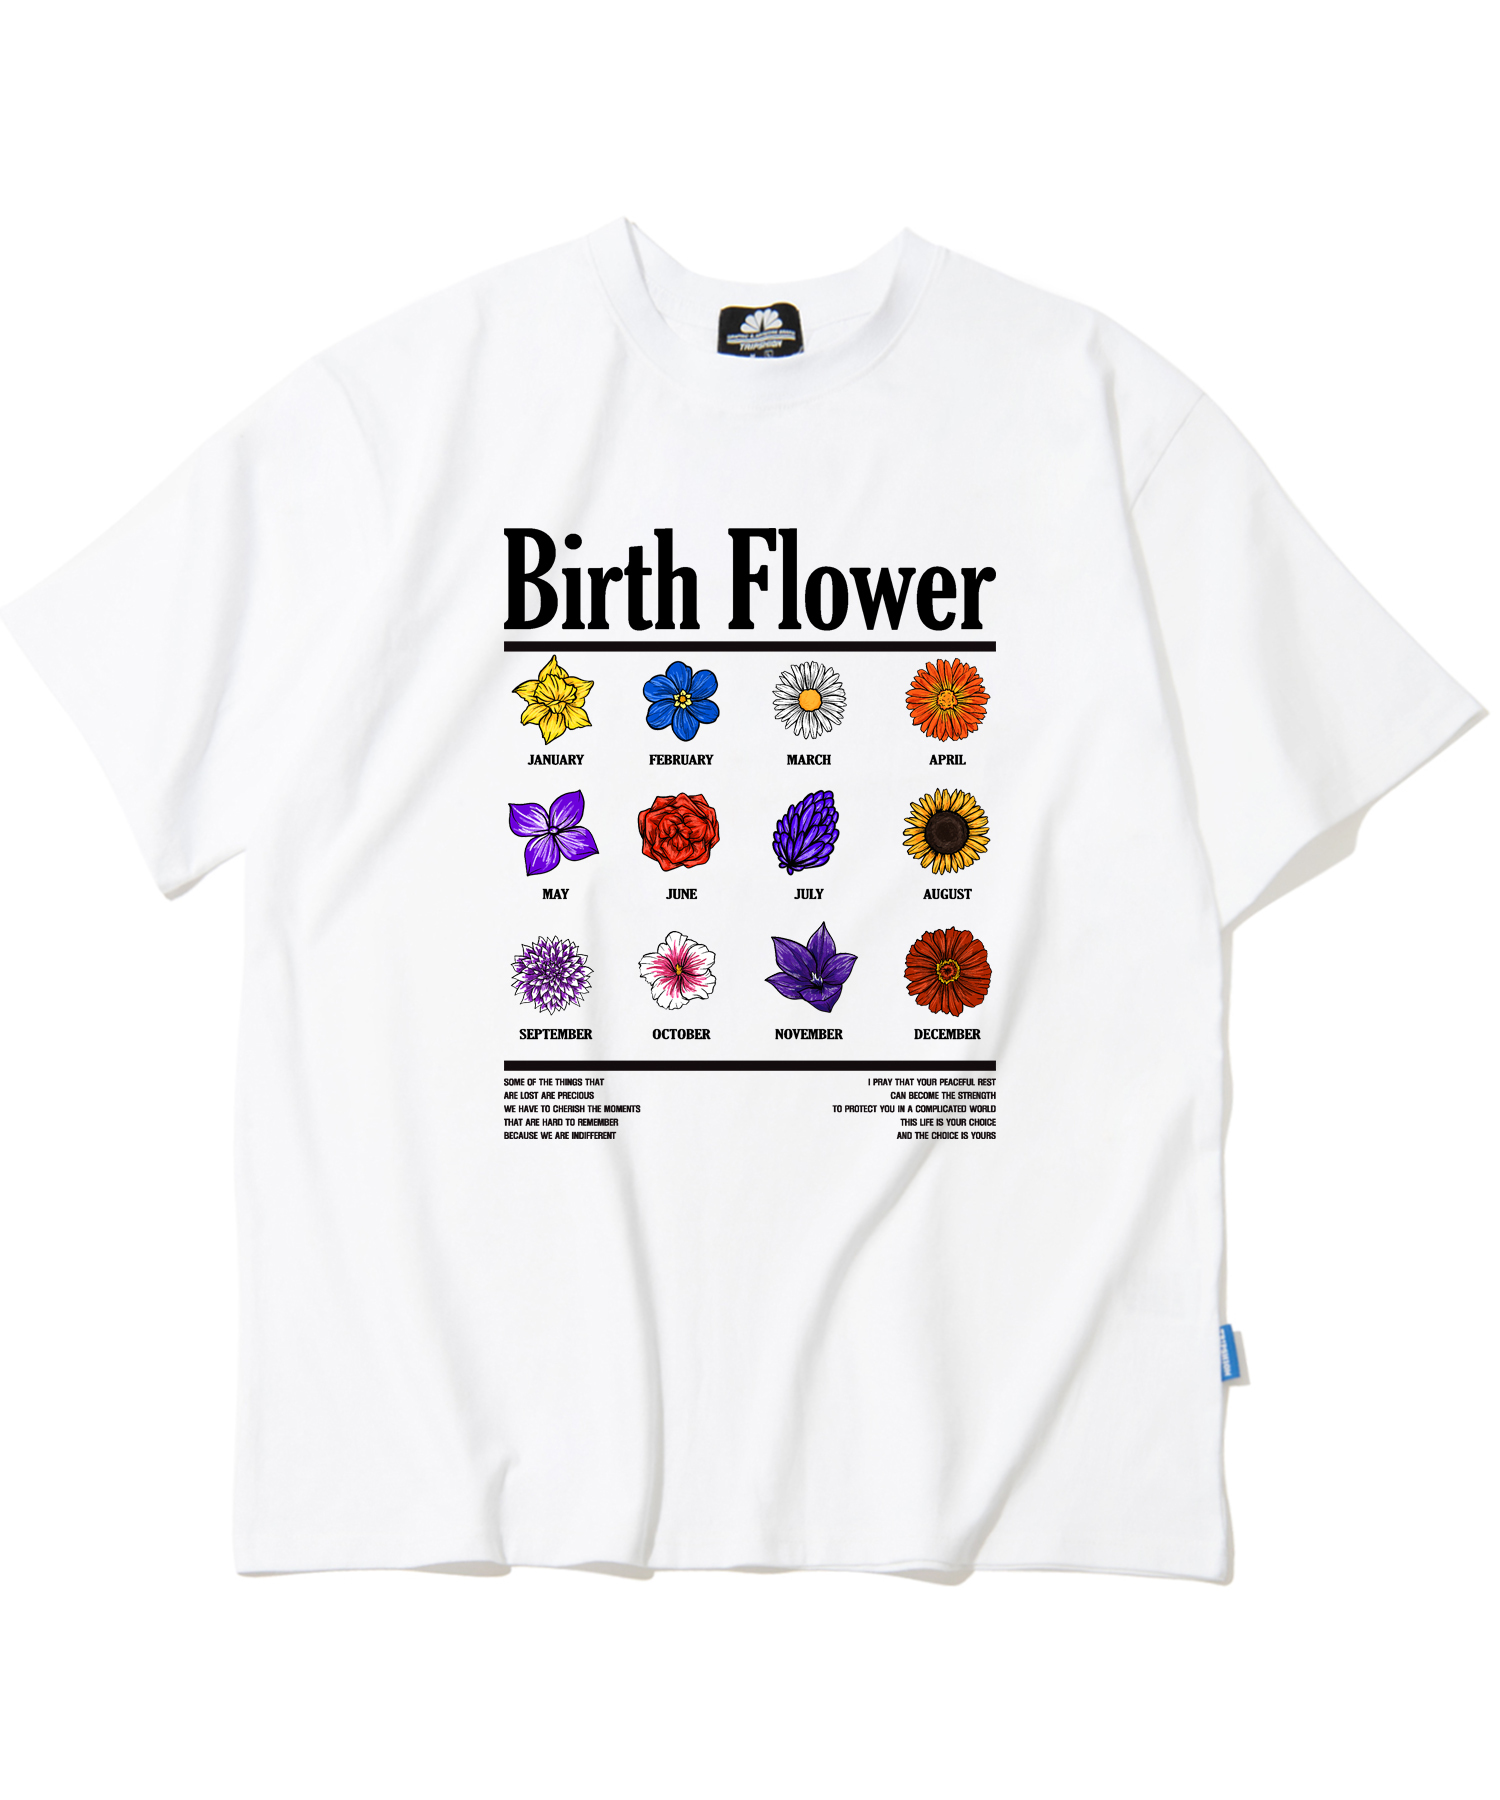 BIRTH FLOWER GRAPHIC T-SHIRTS - WHITE